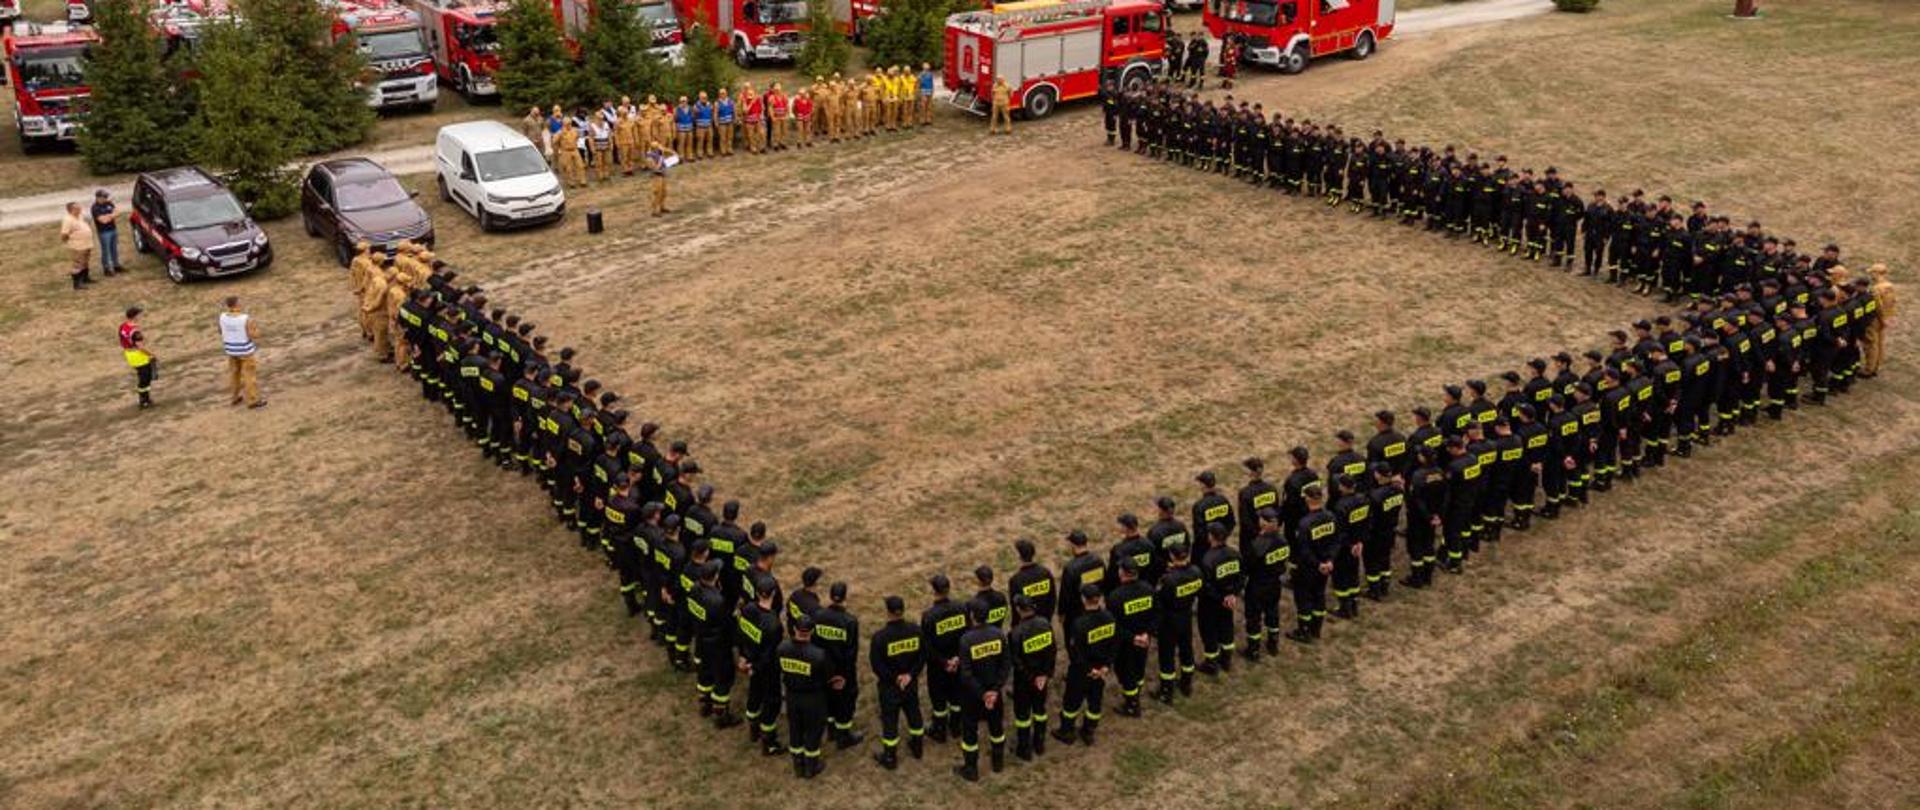 Na zdjęciu widzimy samochody pożarnicze zaparkowane w punkcie przyjęcia sił i środków oraz strażaków, którzy uczestniczyli w ćwiczeniach.